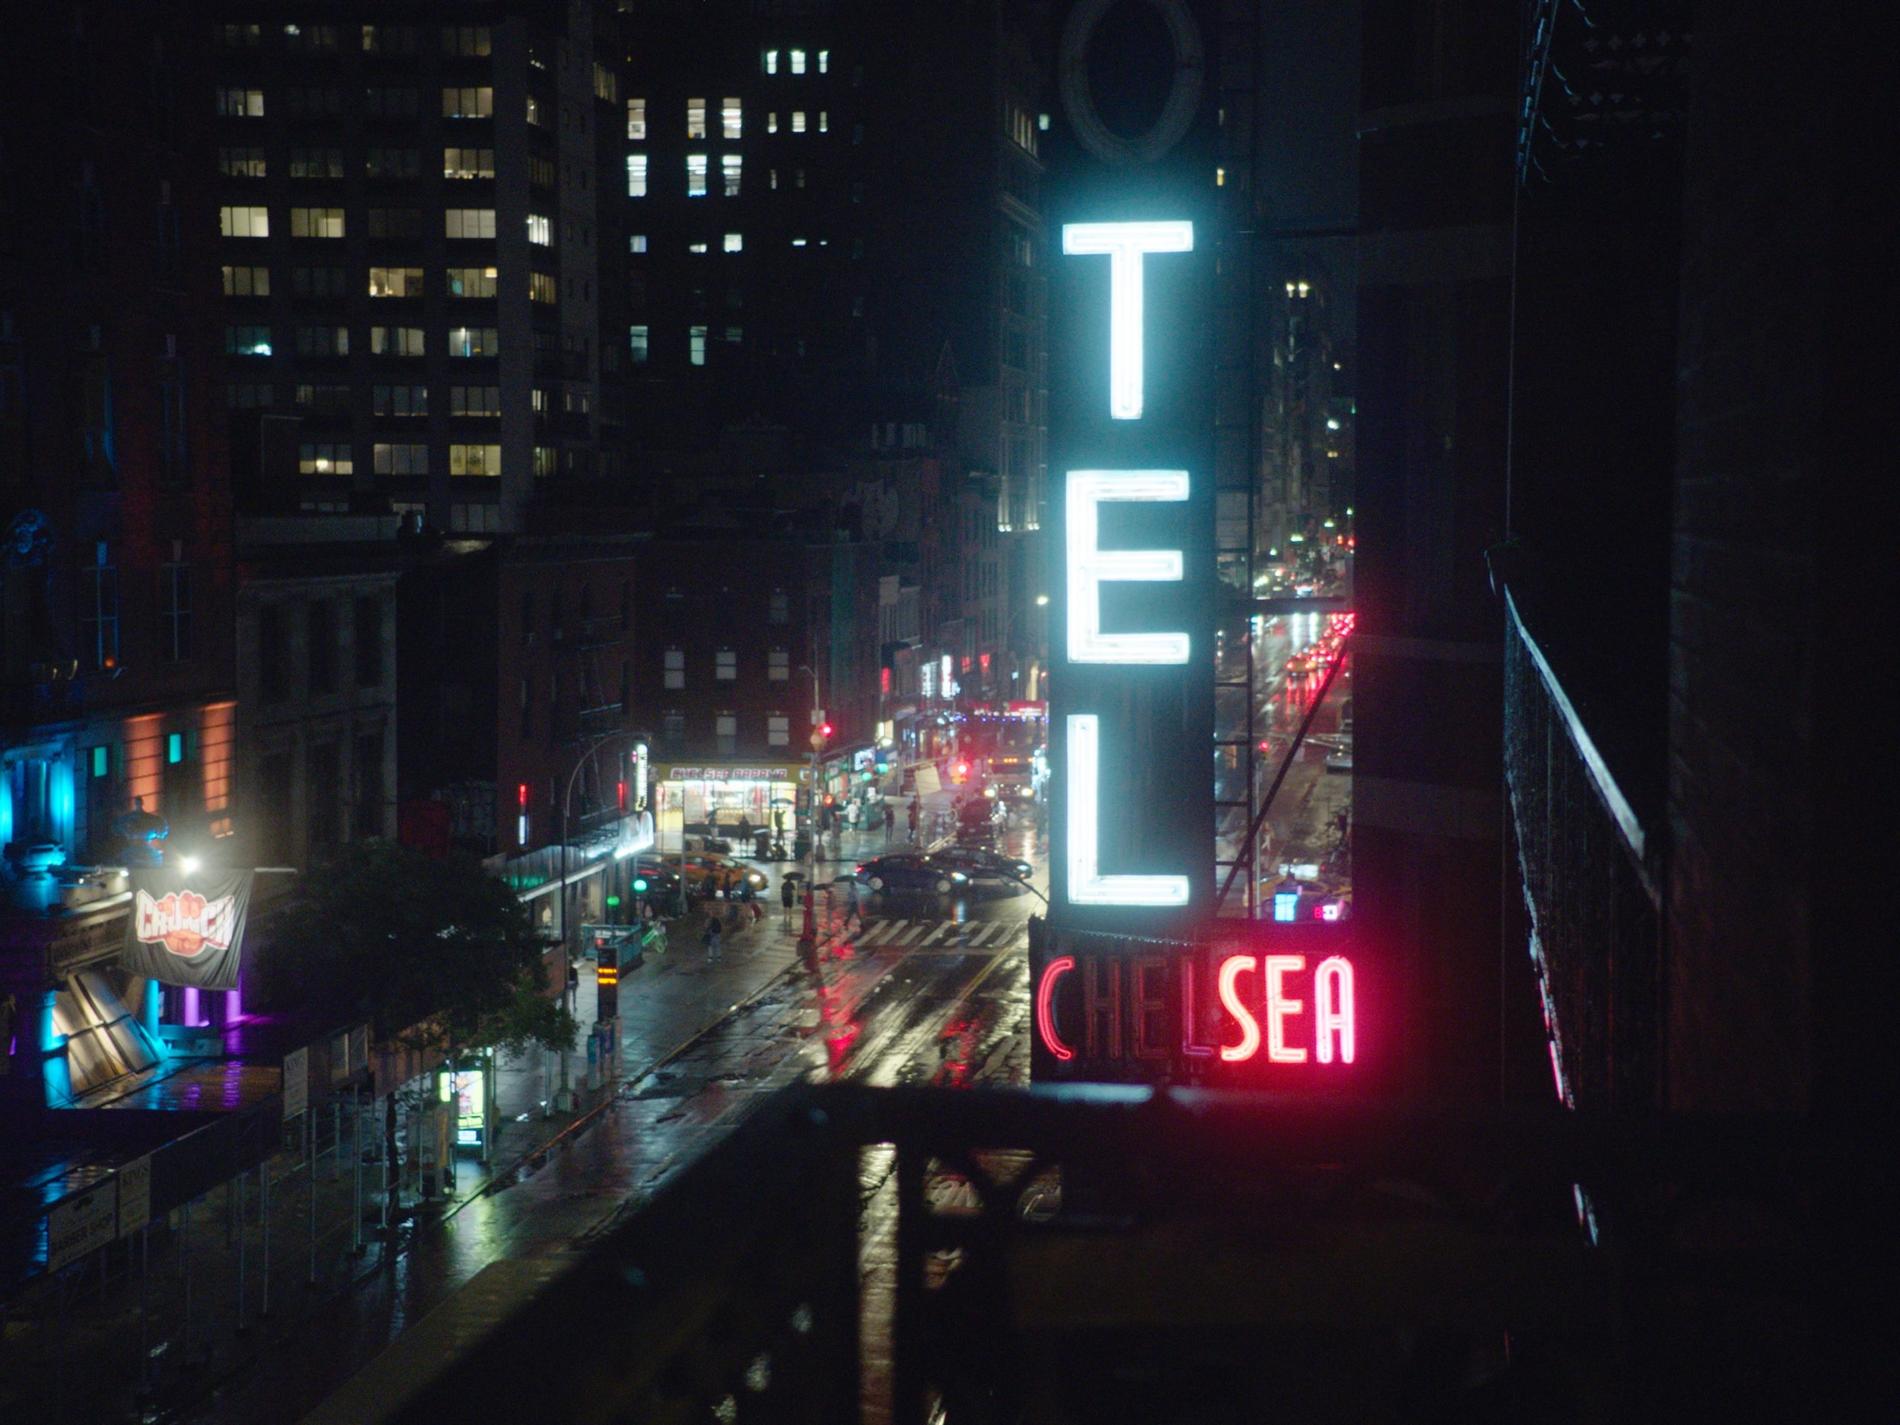 Filmen om Chelsea Hotel visar upp en lite sorgsen bild av en döende kulturinstitution och ett förändrat Manhattan.